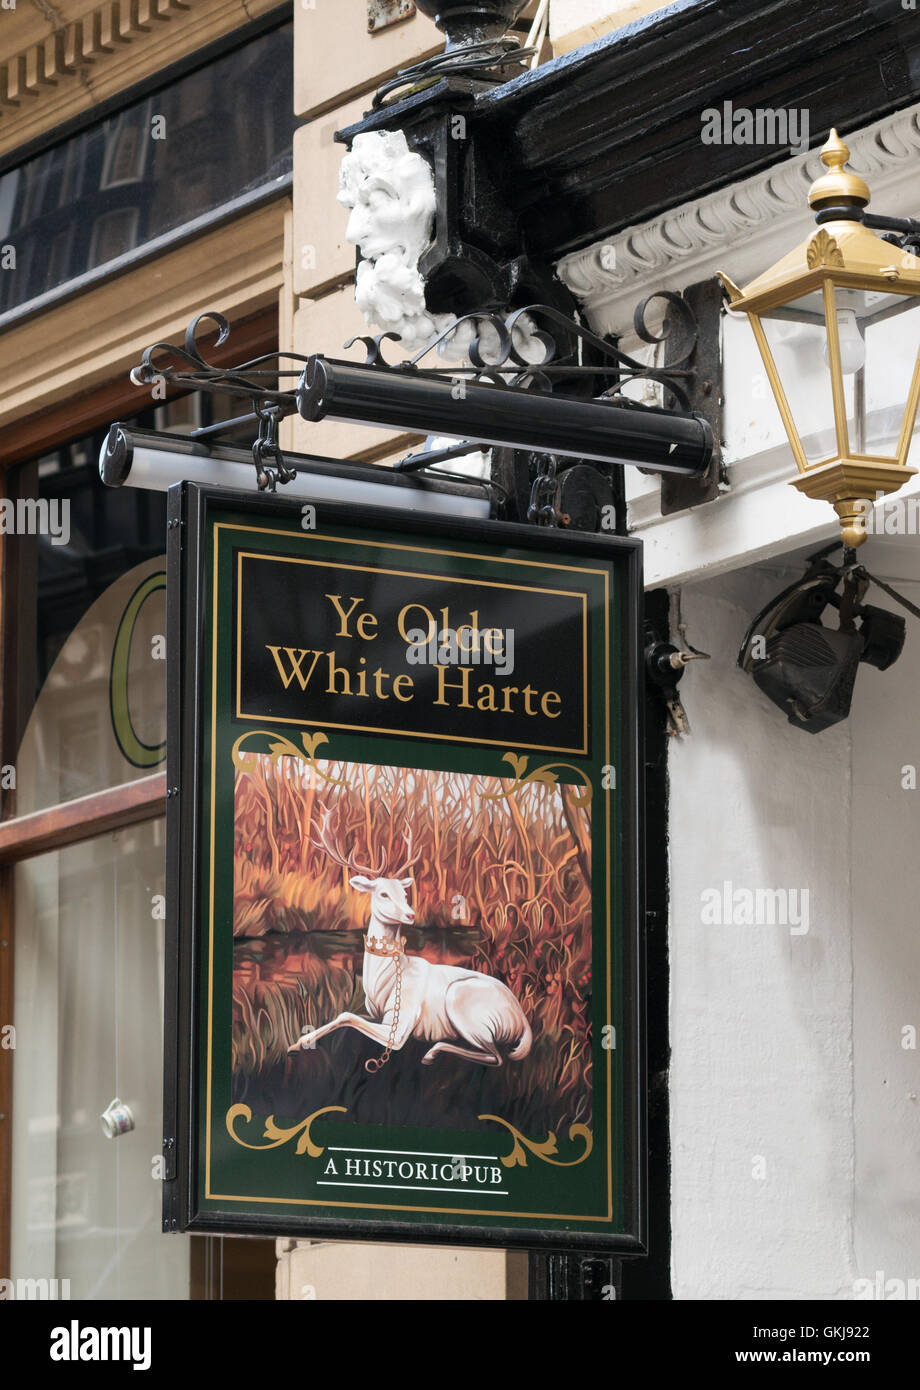 Ye Olde White Harte historic pub sign, Kingston upon Hull, Yorkshire, England, UK Stock Photo